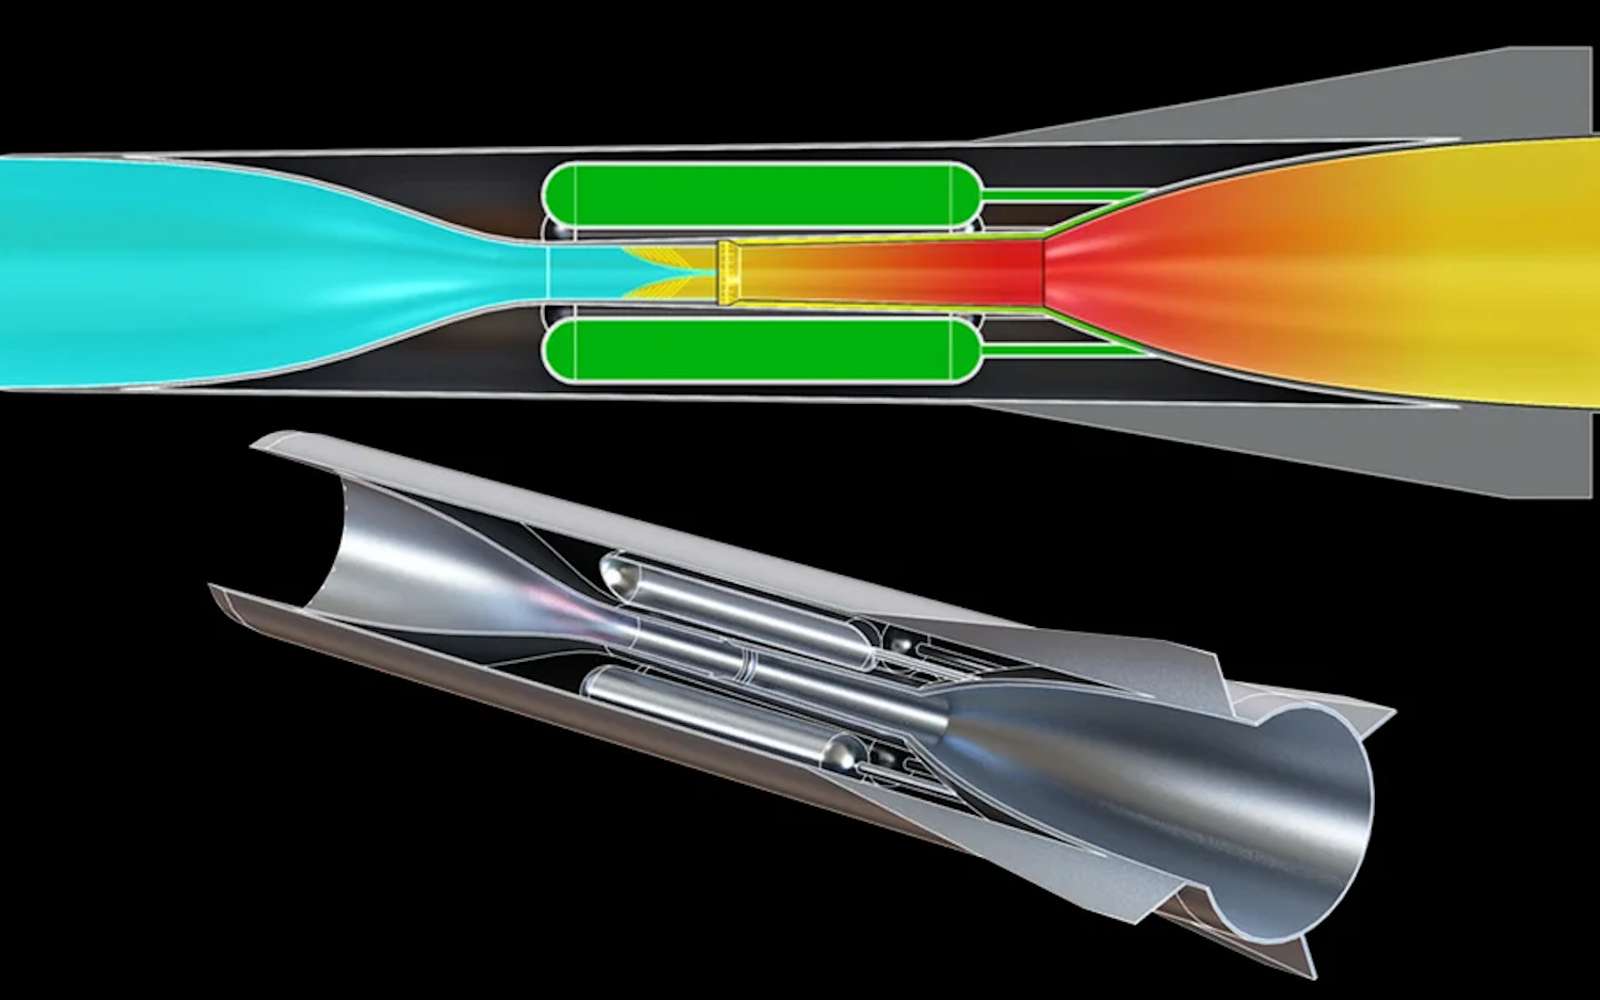 Un moteur hypersonique révolutionnaire qui change de forme pendant le vol